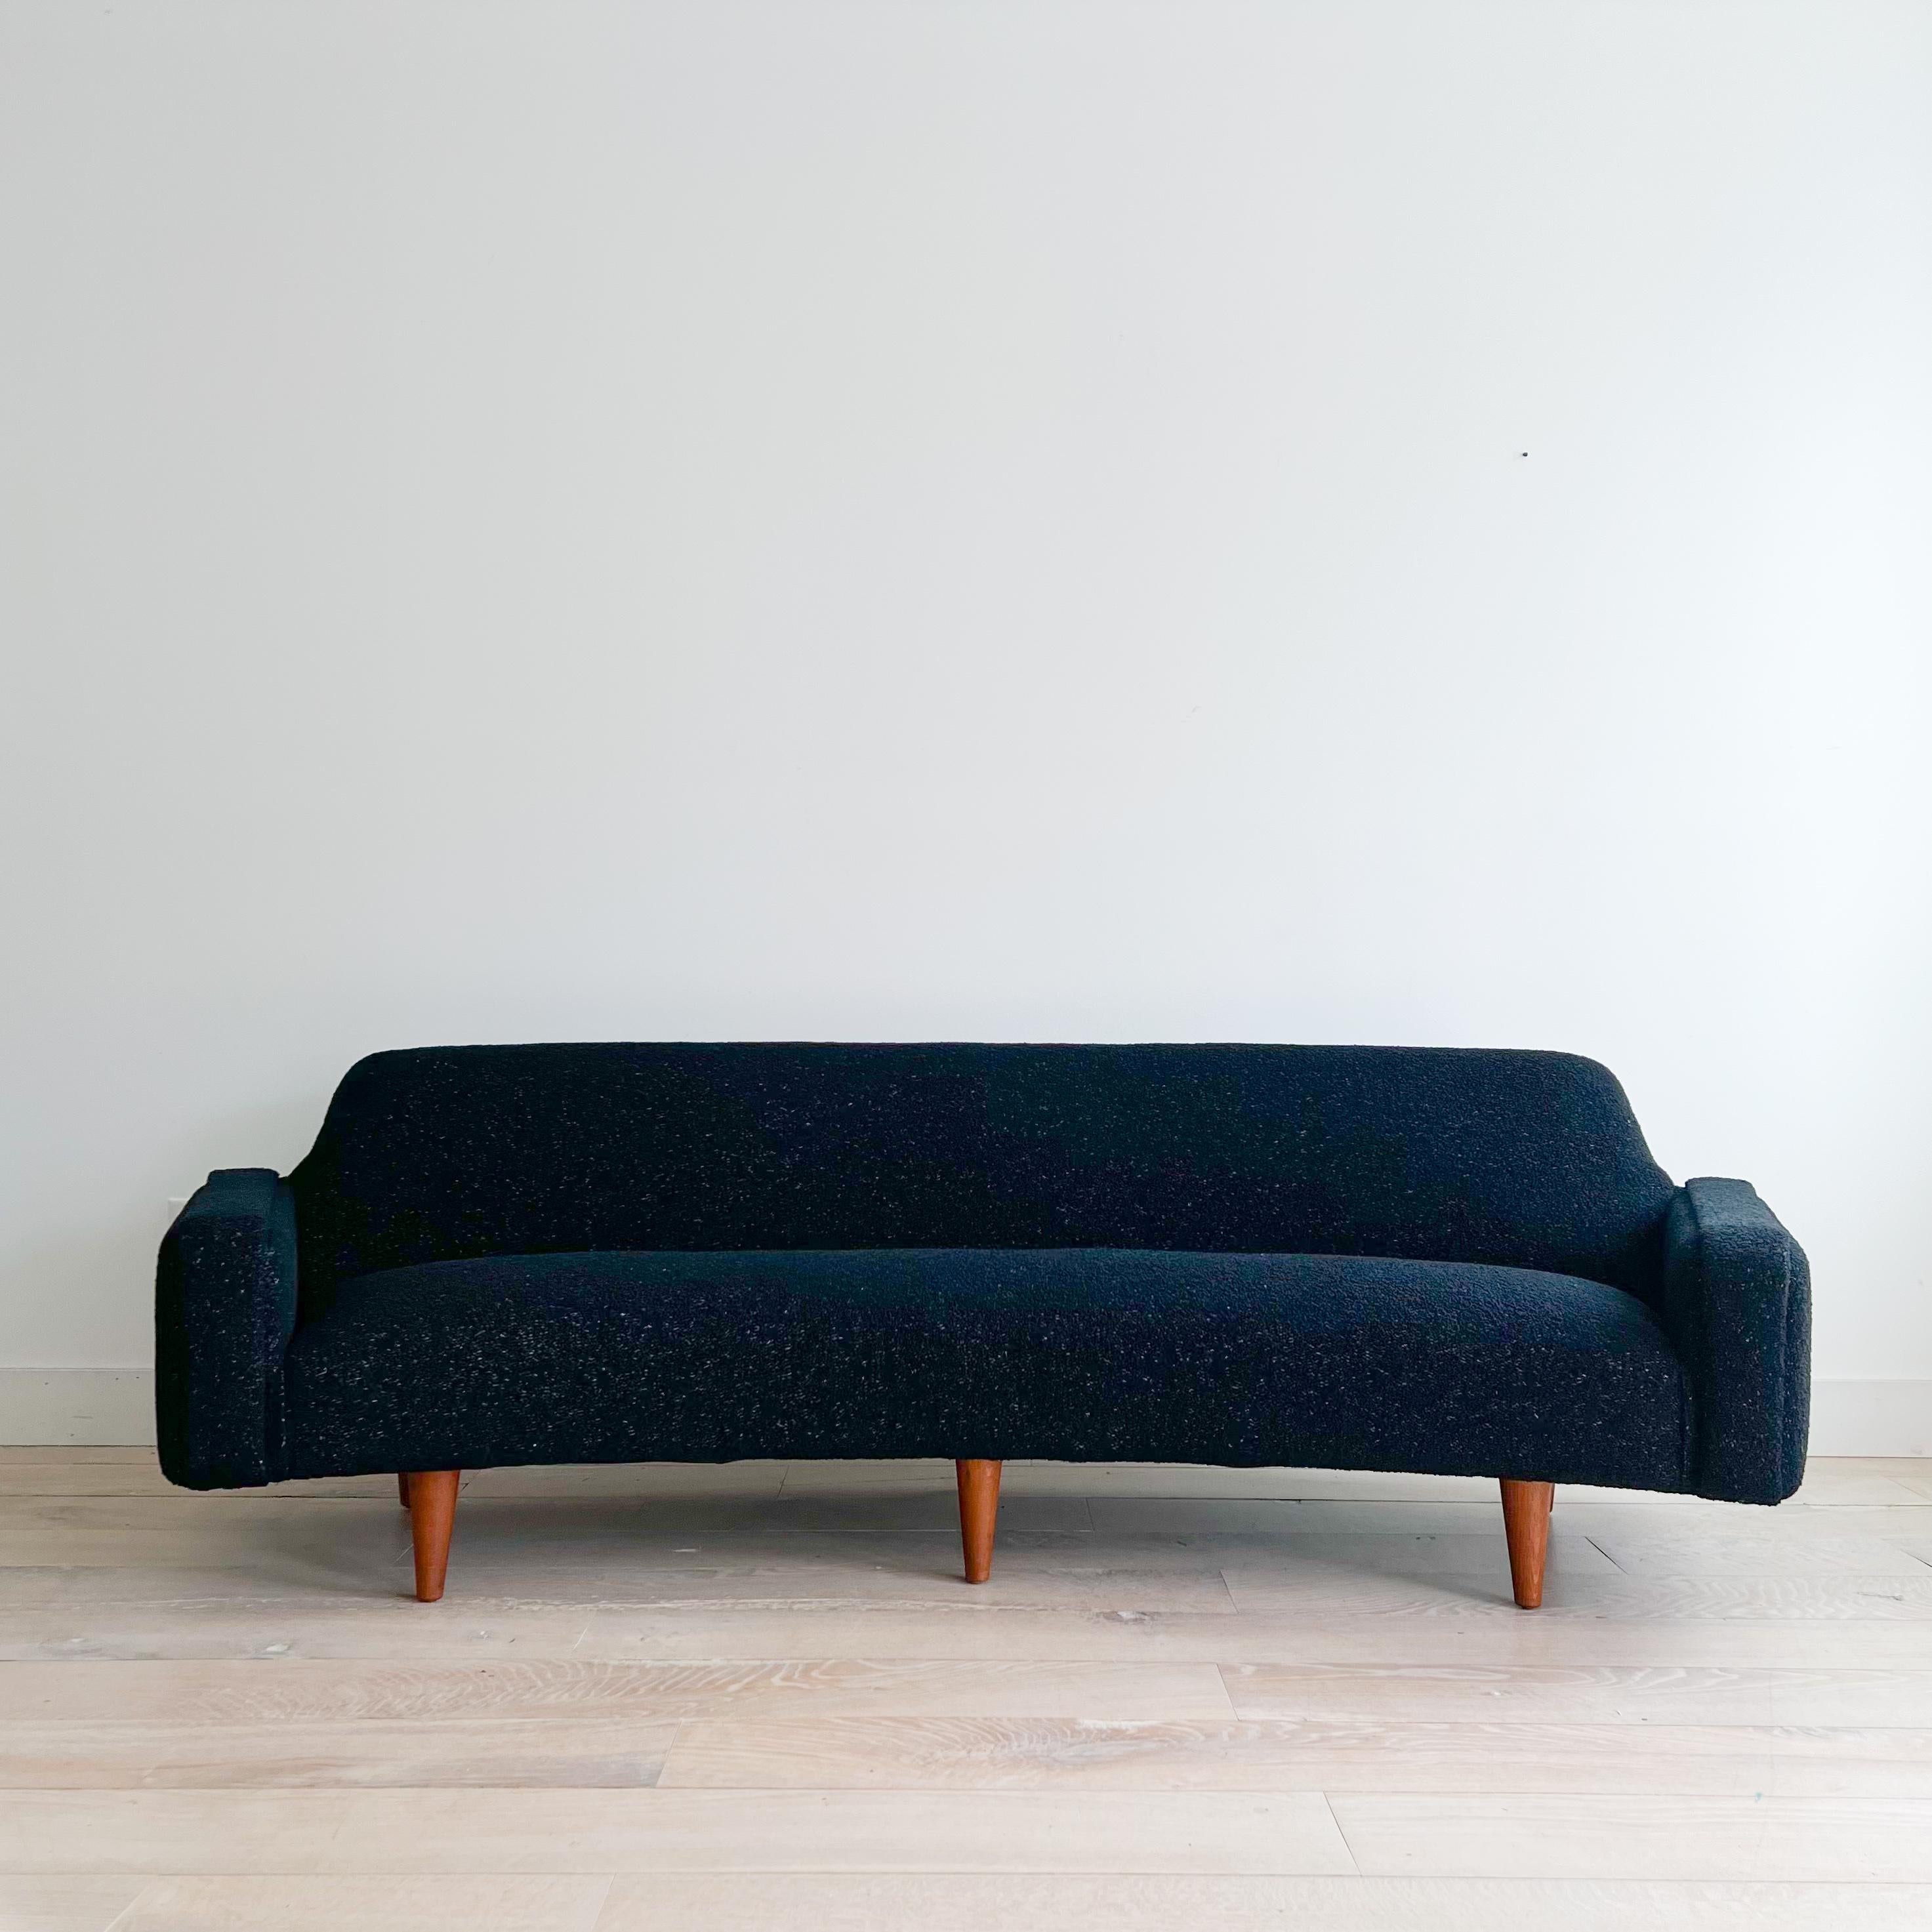 Illum Wikkelso's Rare Banana Curved Sofa - Model 450 - New Upholstery 5